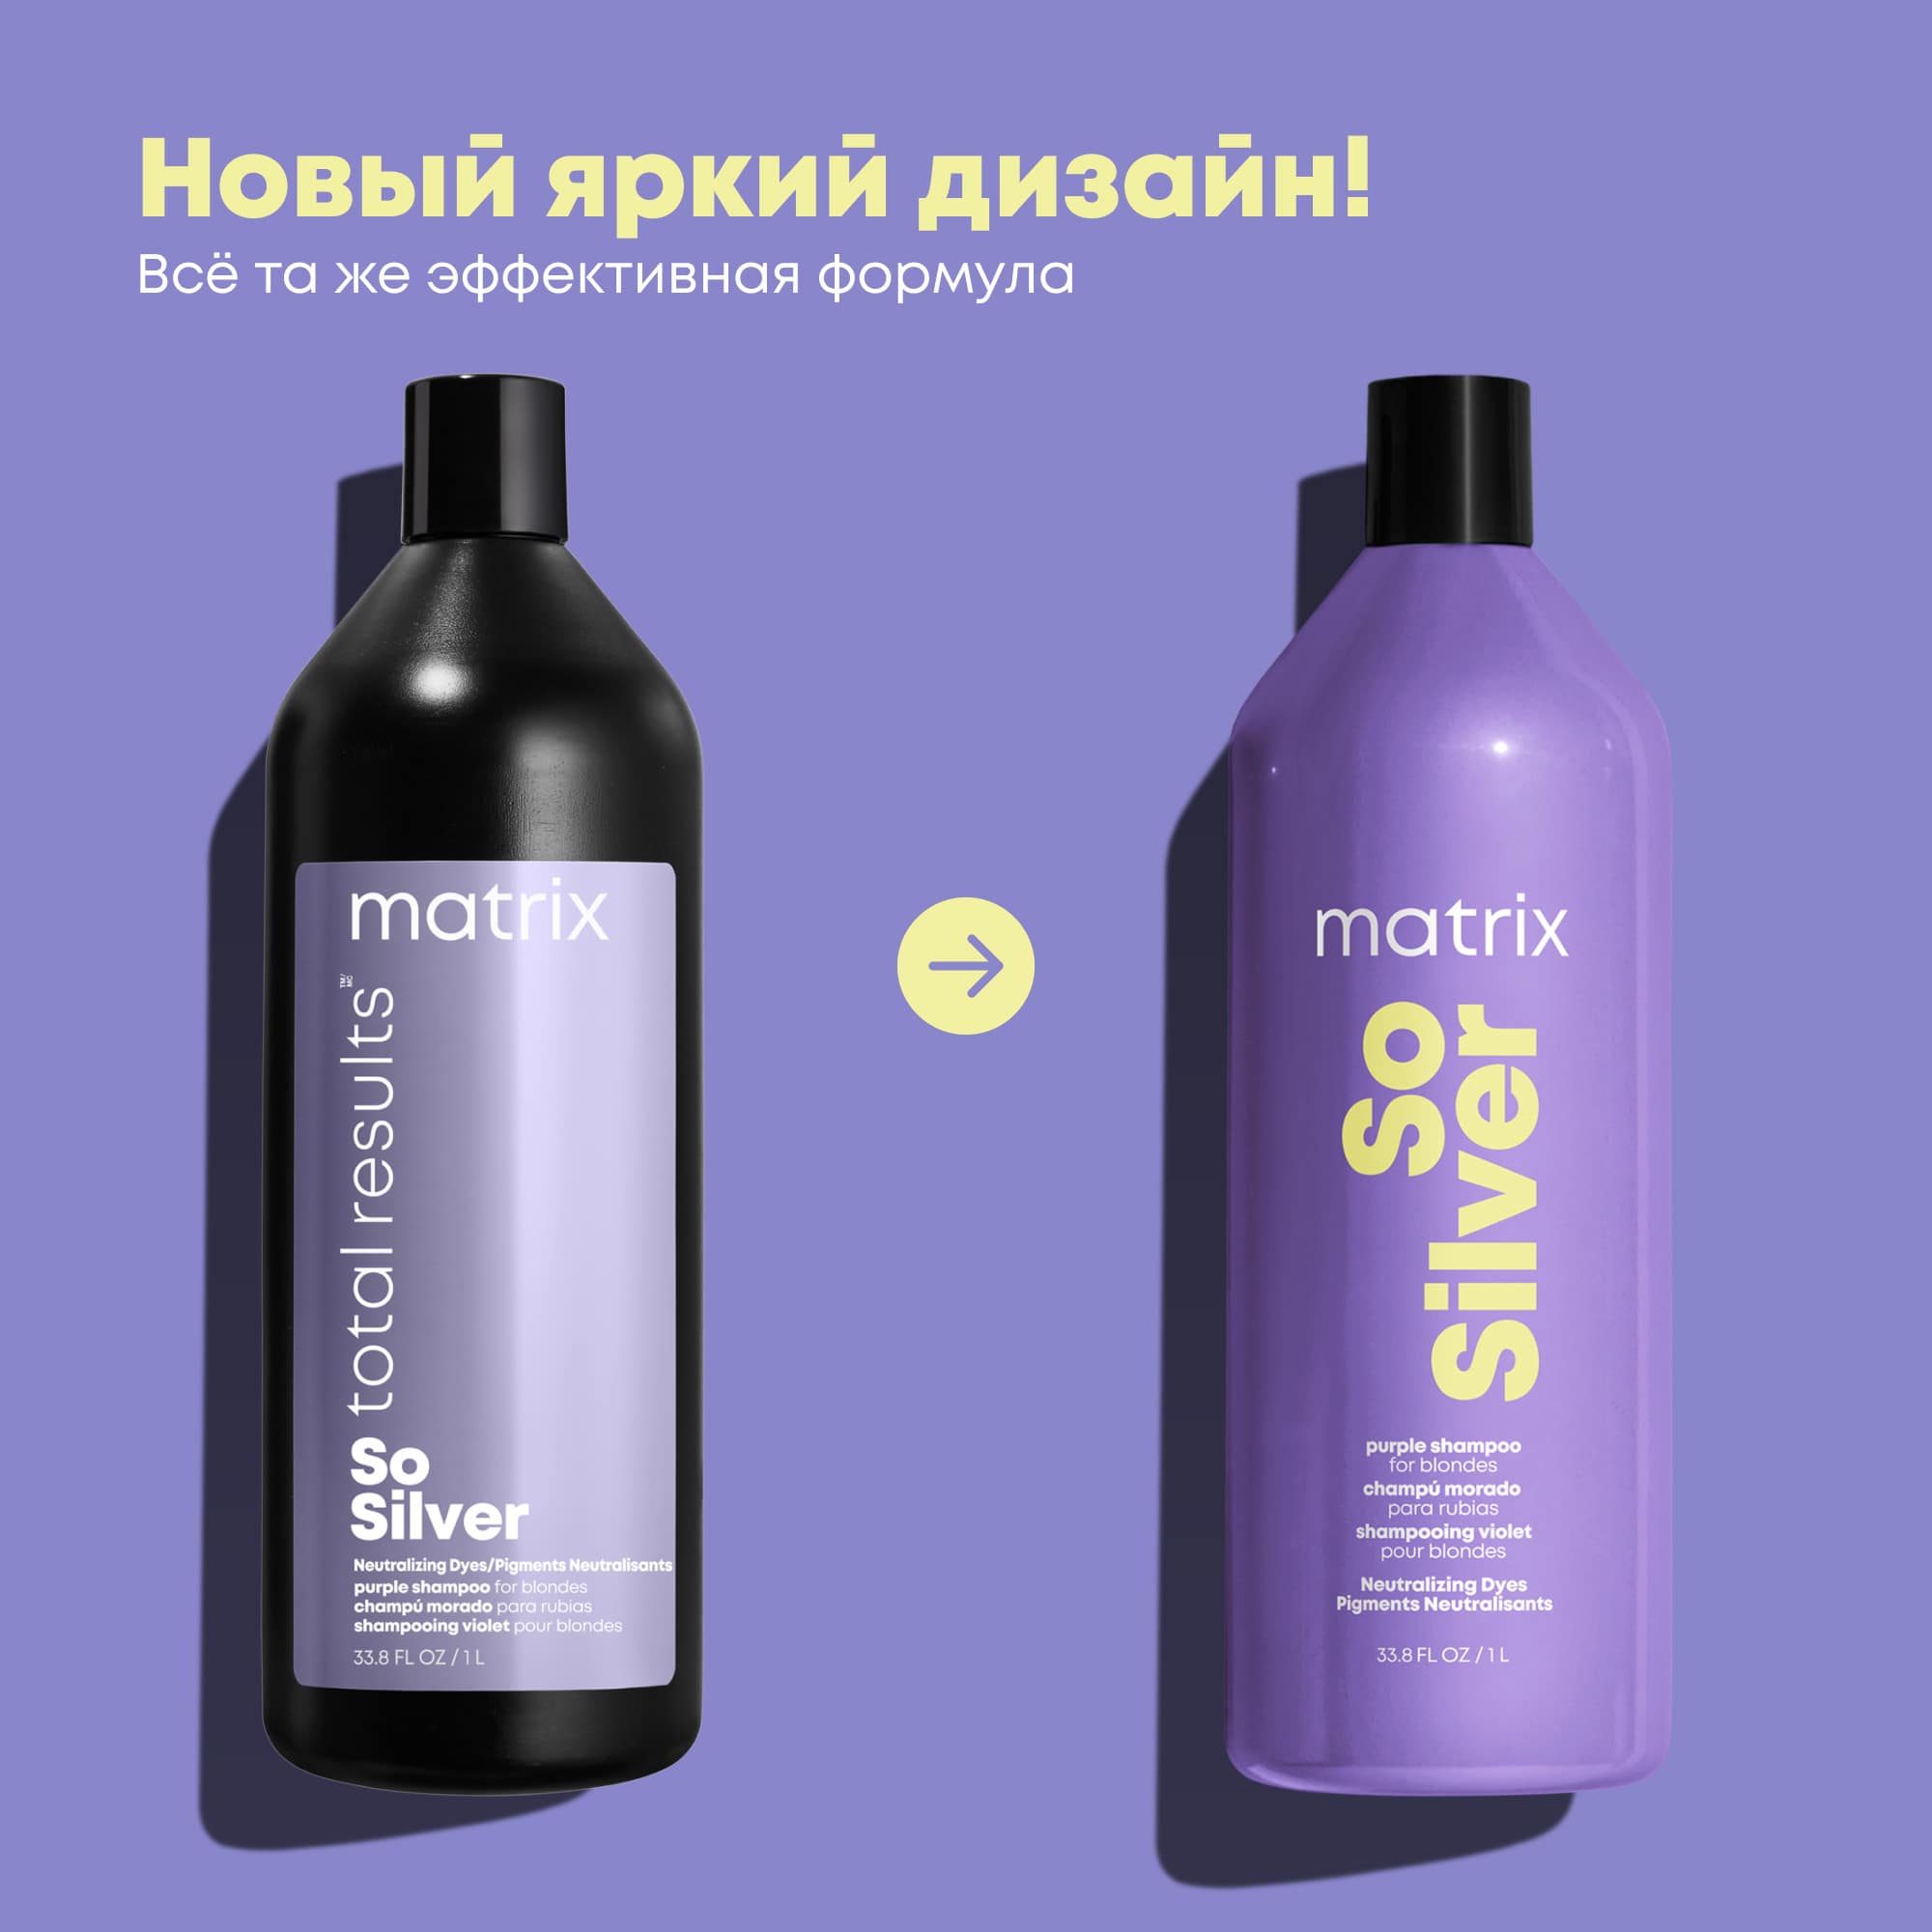 Matrix Оттеночный шампунь So Silver Color Obsessed для светлых и седых волос, 1000 мл. фото